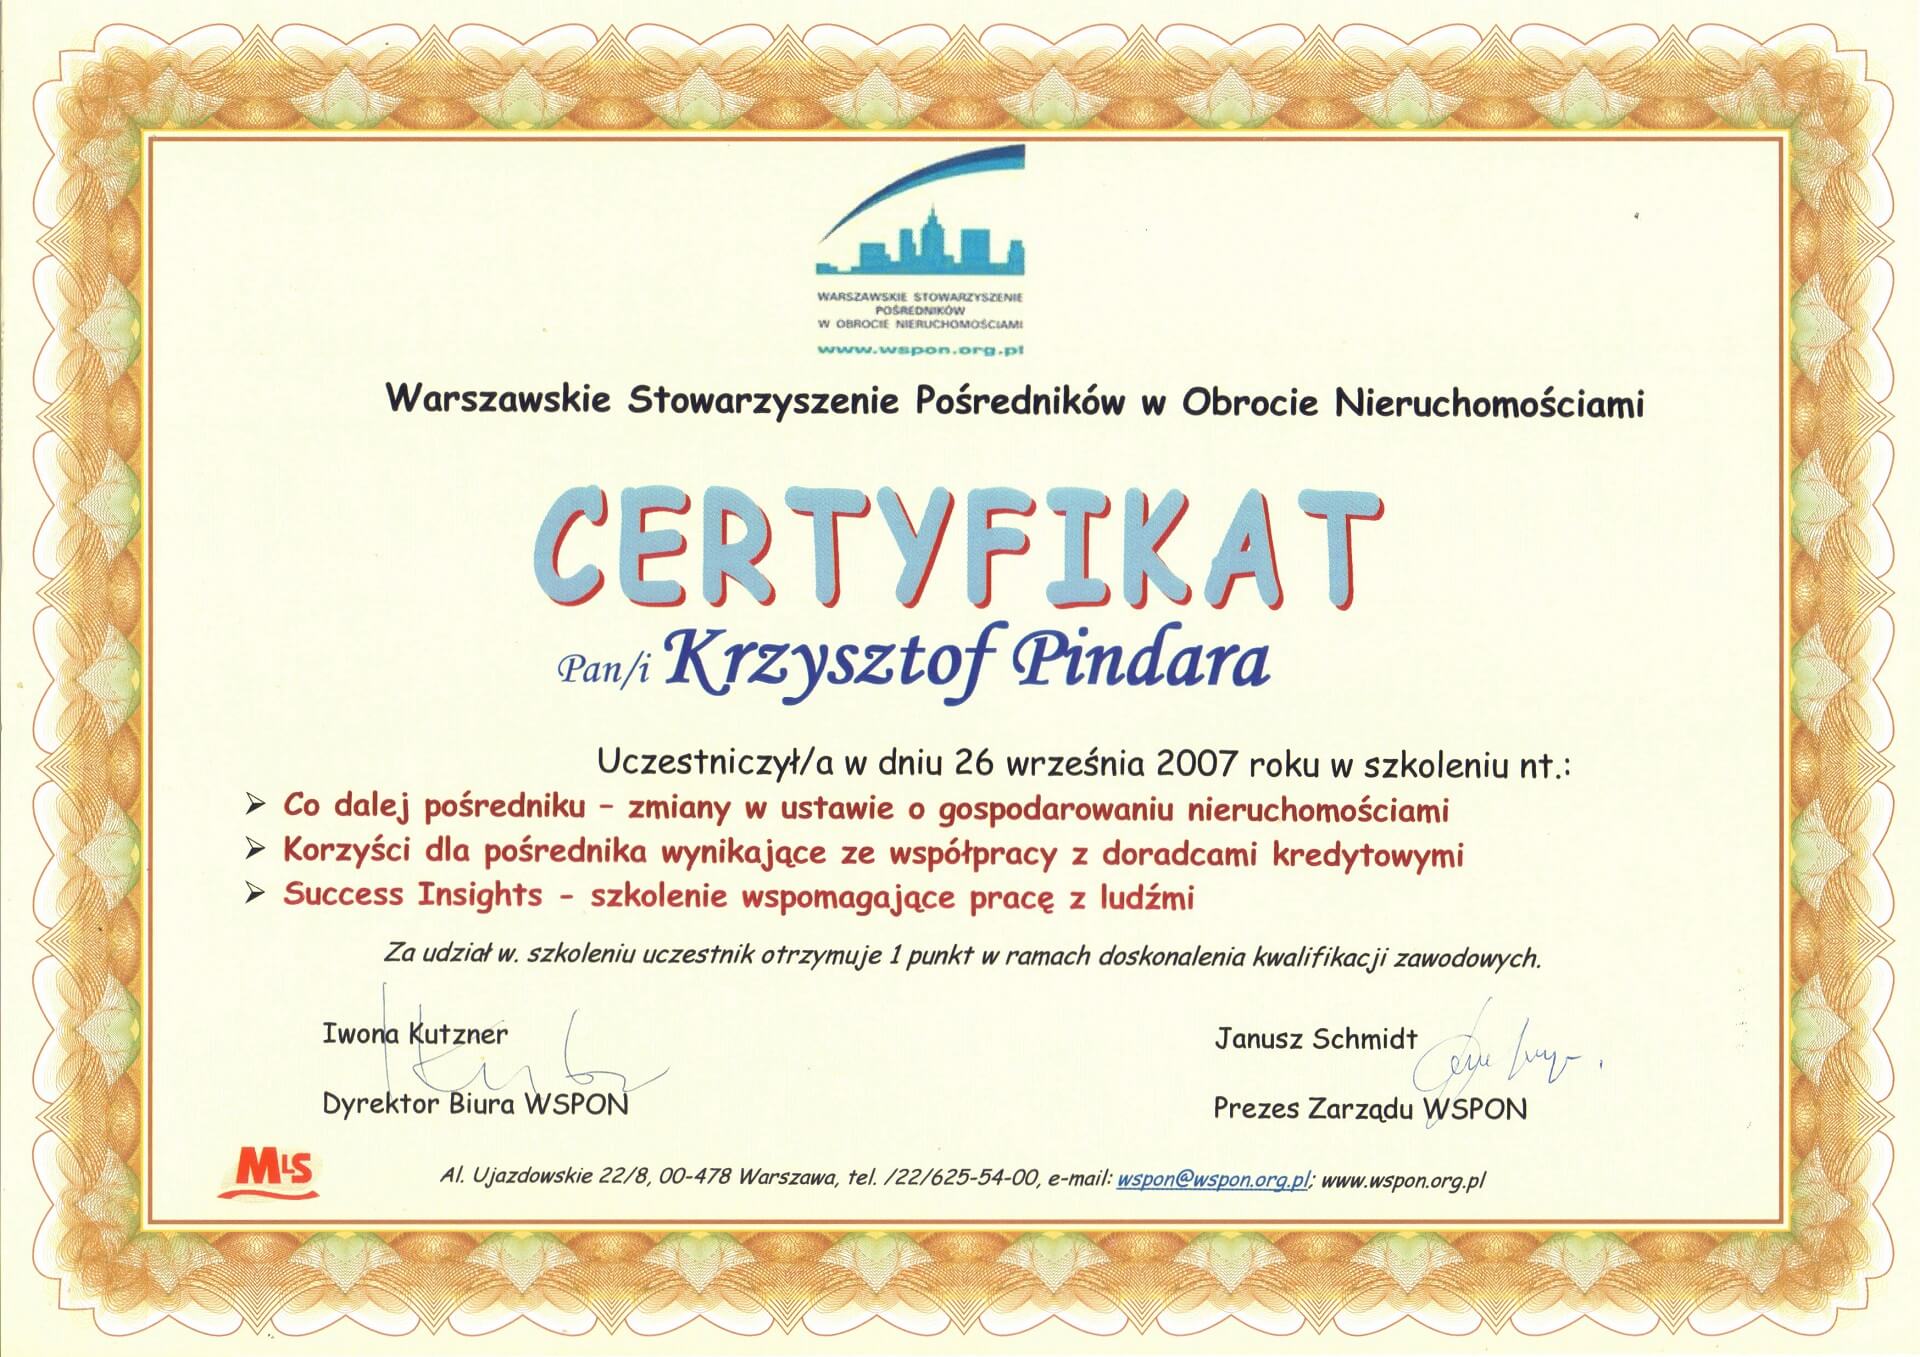 Certyfikat_Krzysztof Pindara Brzeziński (5)